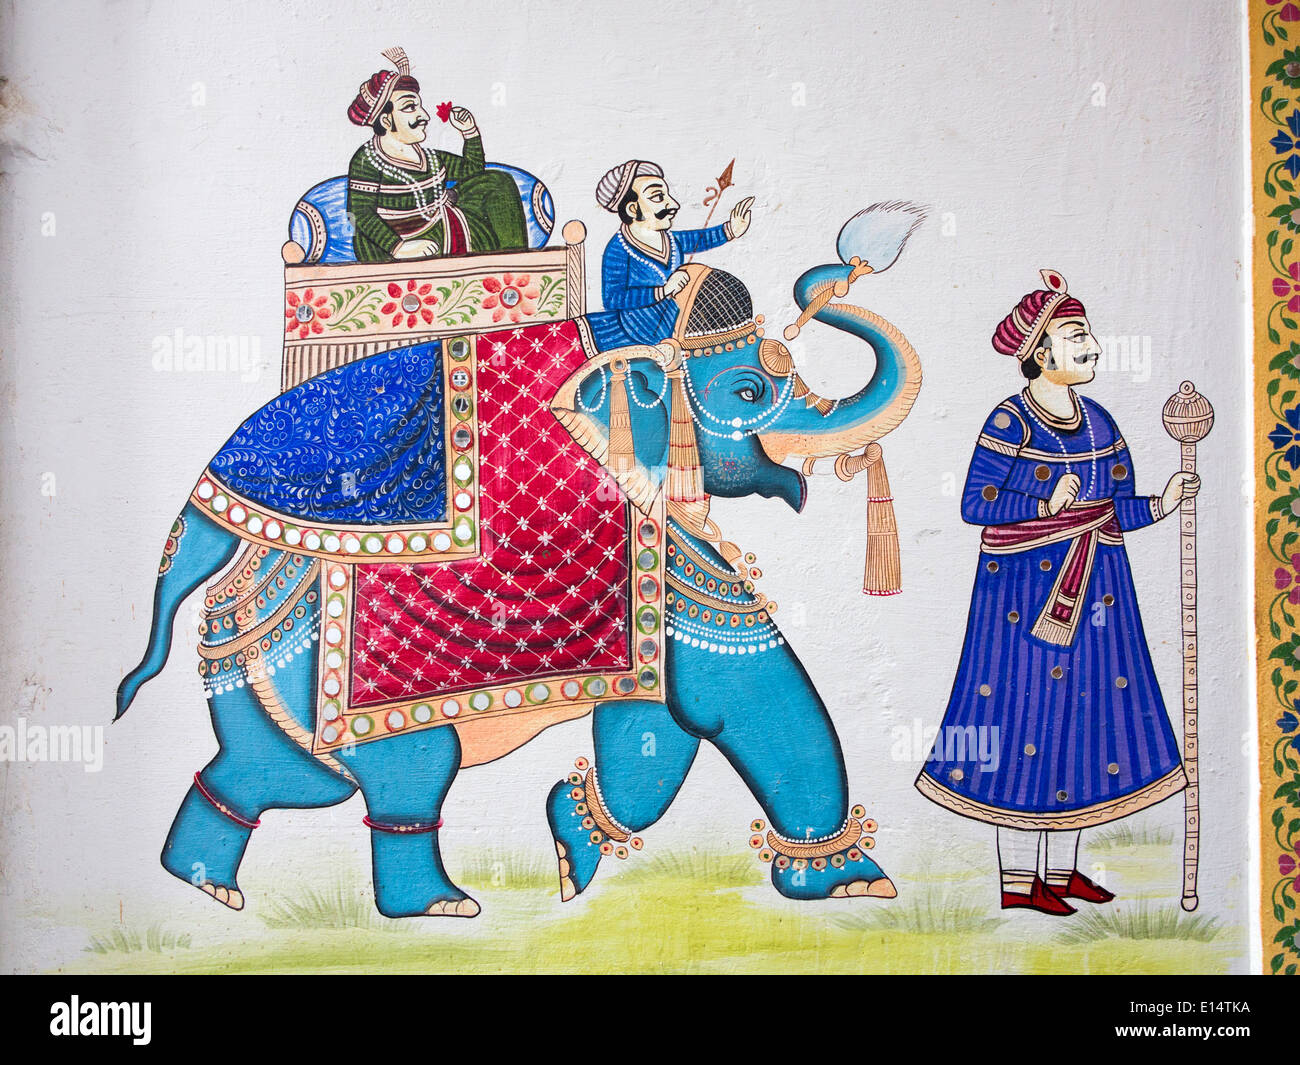 Indien, Rajasthan, Udaipur, Rajasthani Folk Art, Wandmalerei der Rajput Mann auf Elefanten mit Blume Stockfoto